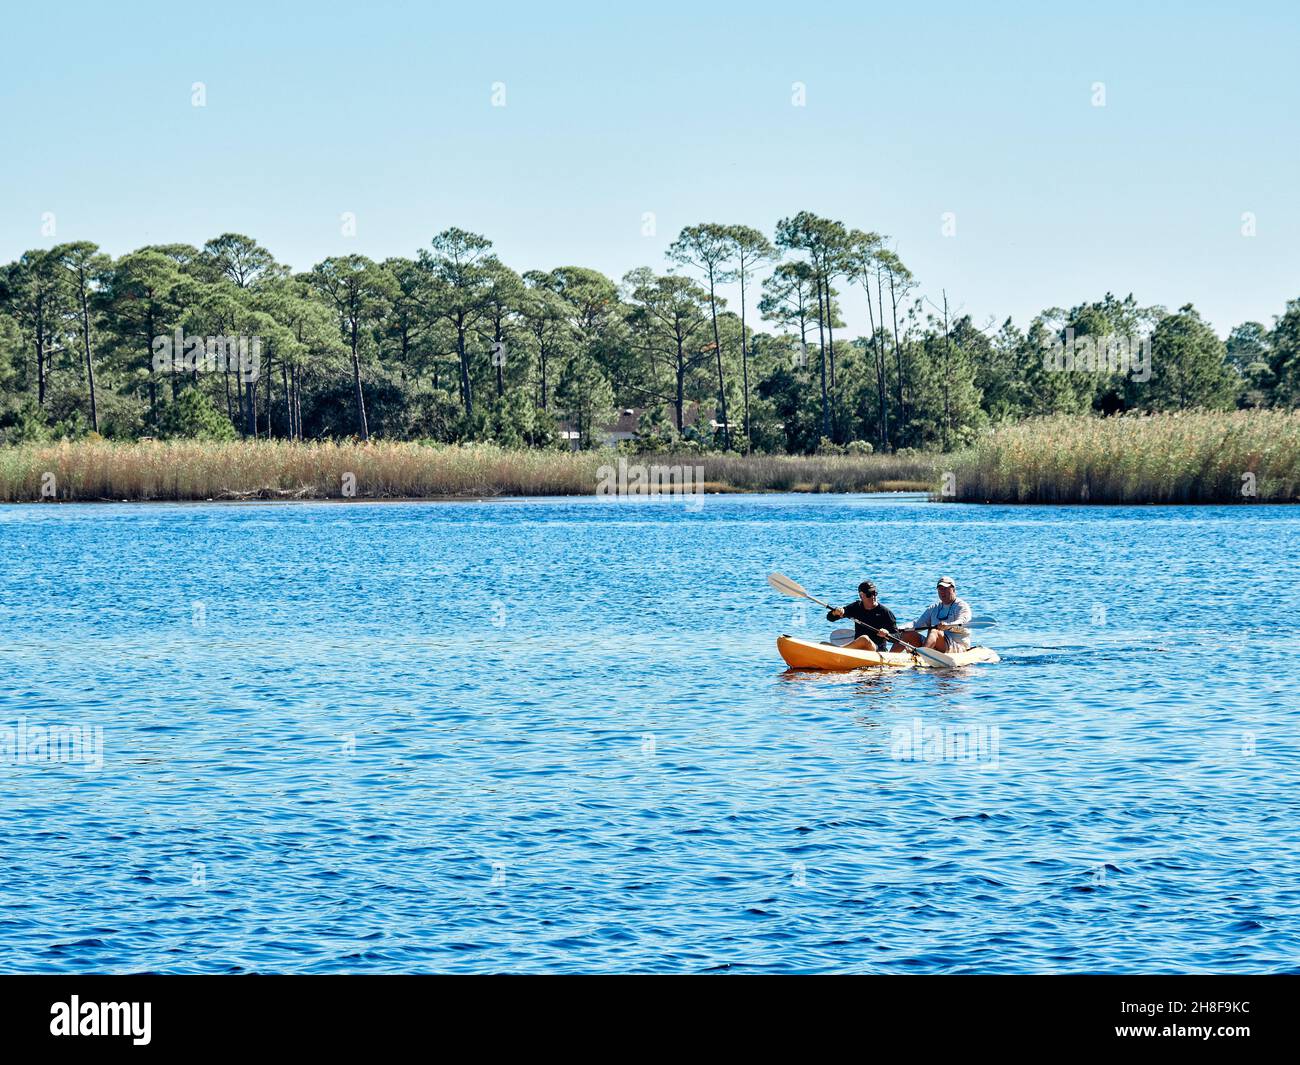 Les gens qui font du kayak à Western Lake dans le parc national de Grayton Beach, une zone de loisirs touristique populaire dans la côte du golfe de Floride. Banque D'Images